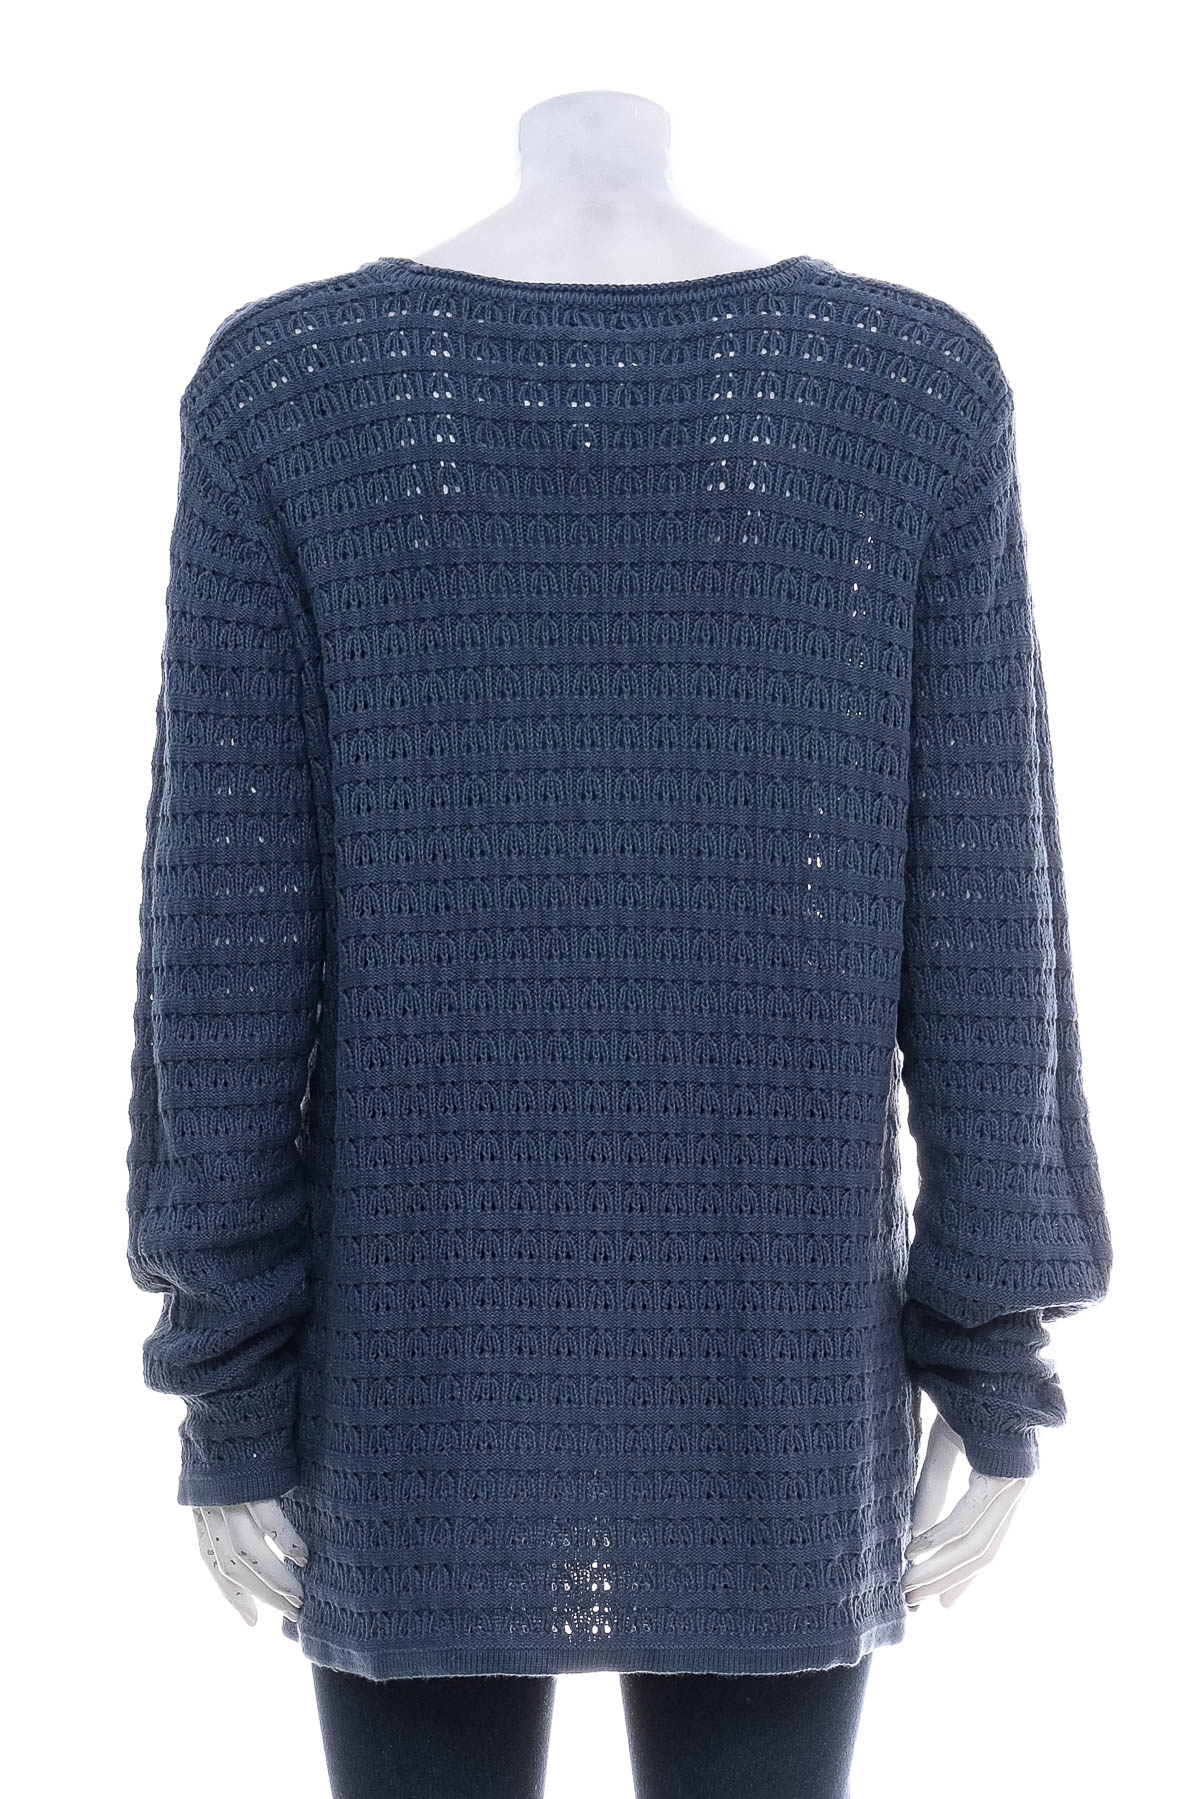 Women's sweater - Michele Boyard - 1